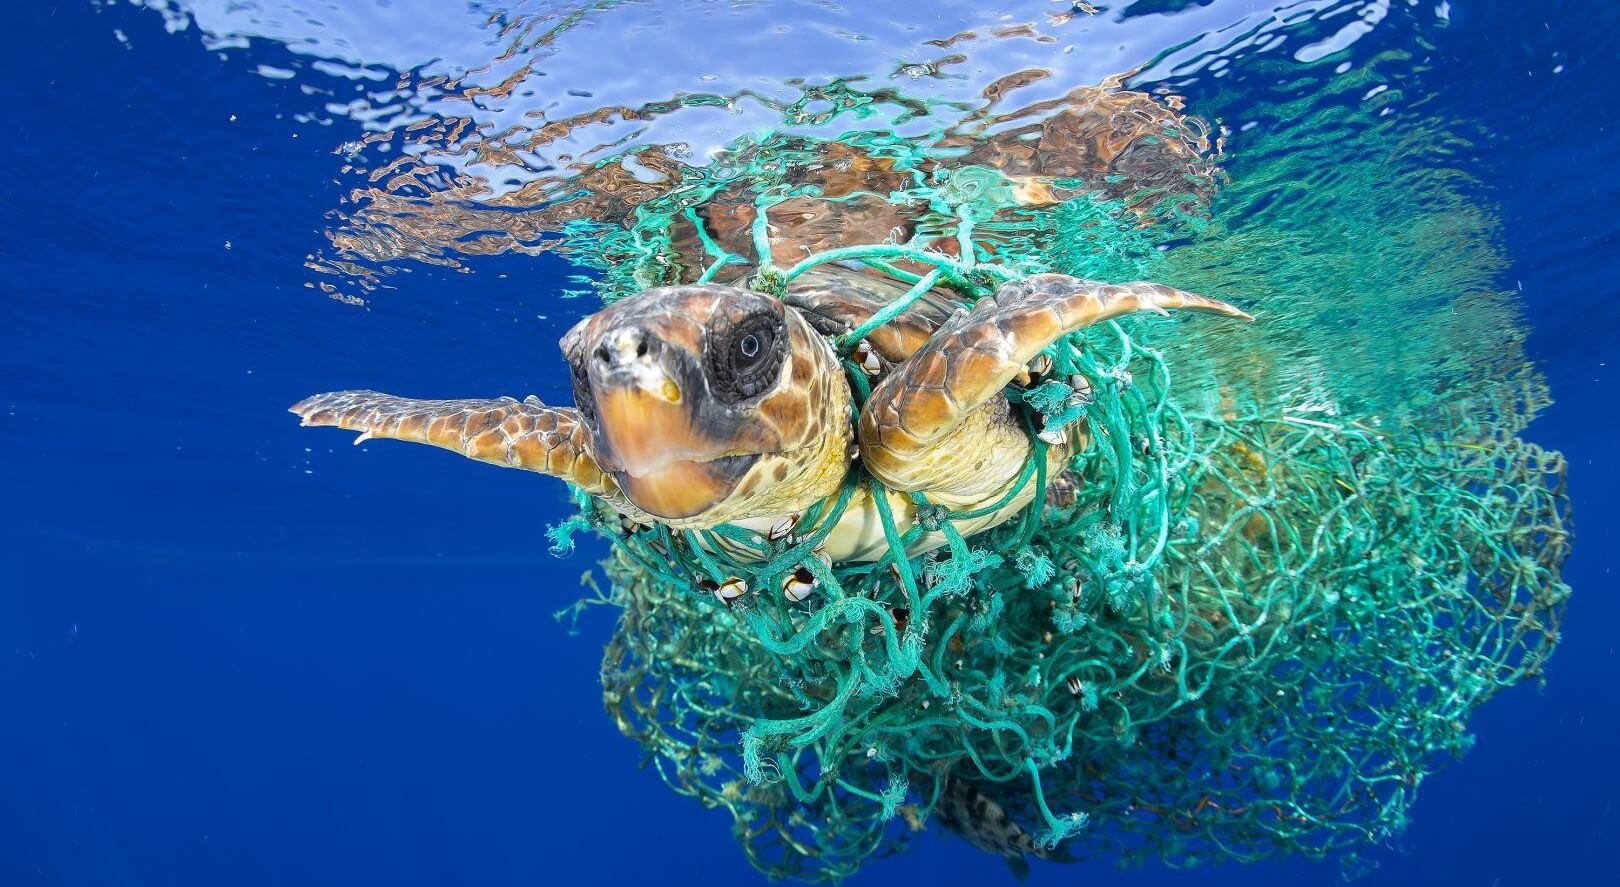 Funnet en måte å fjerne verdens hav fra alle plast